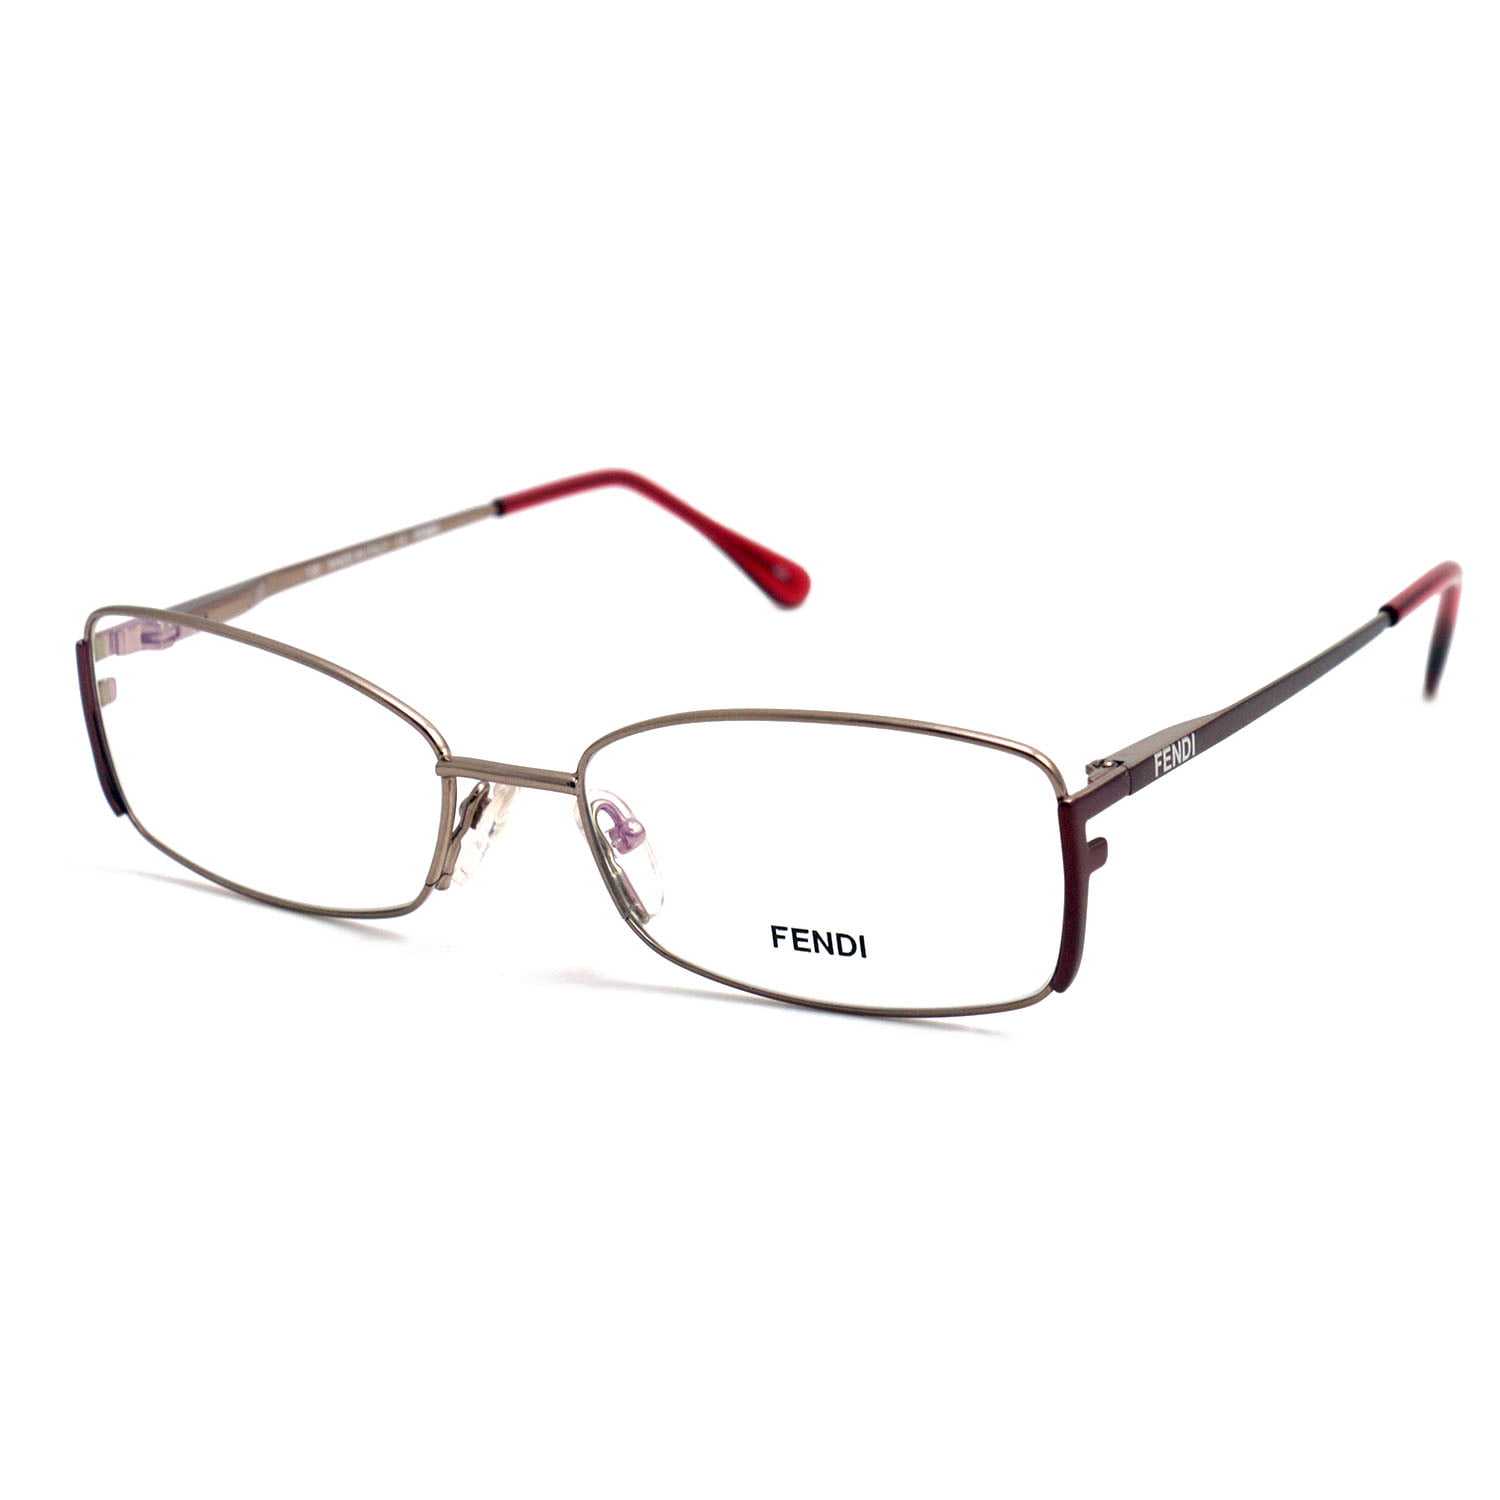 Fendi Eyeglasses Women Light Bronze Frames Rectangle 52 16 135 F960 770